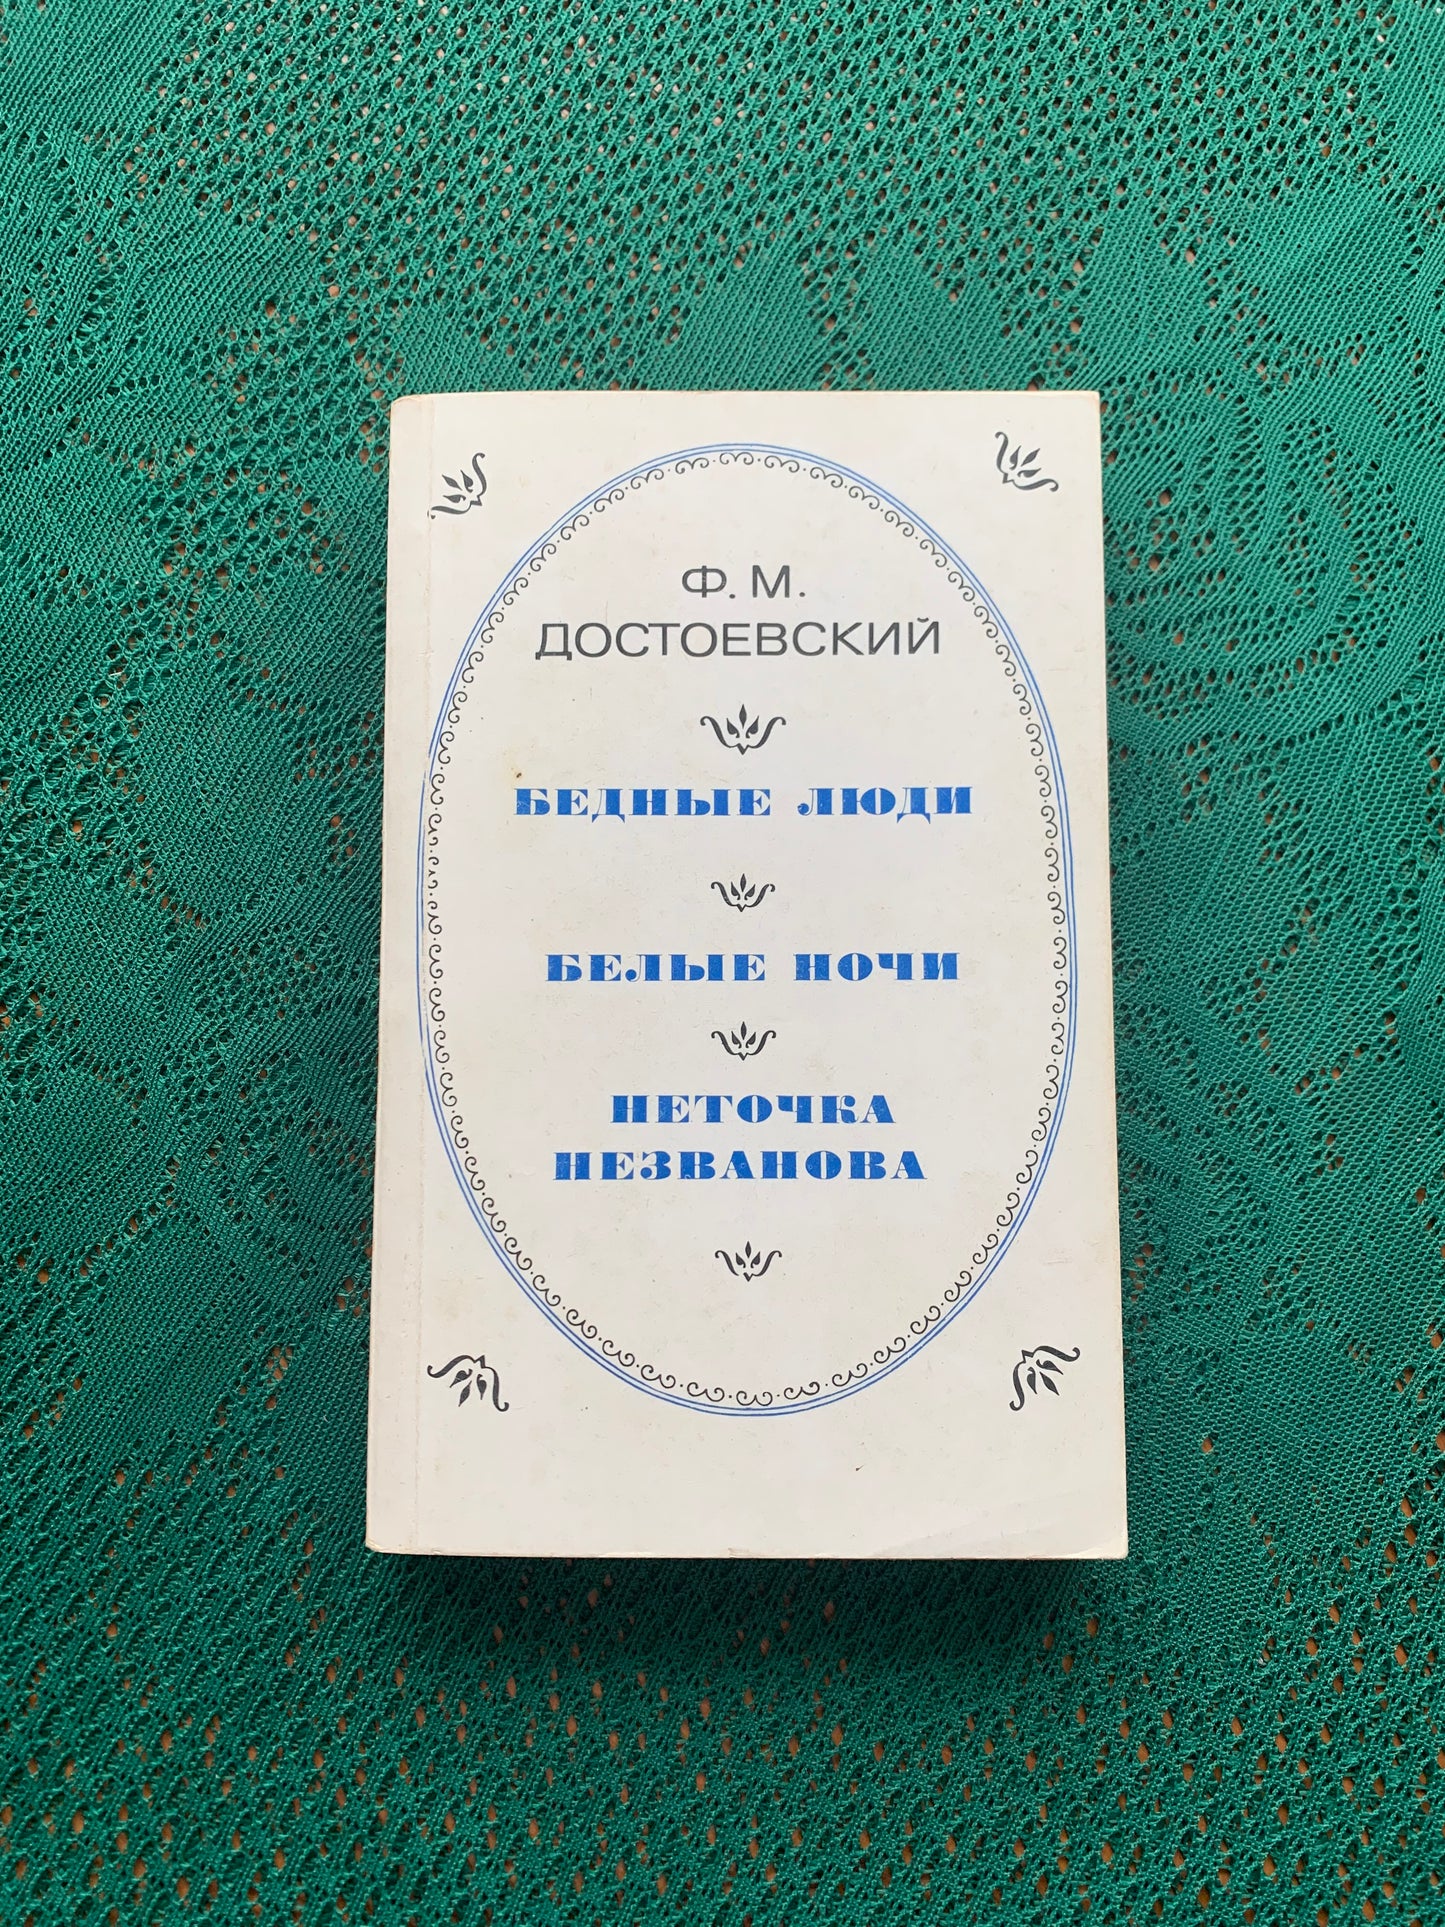 Vintage book - Russian Literature - Fyodor Dostoevsky - 1982